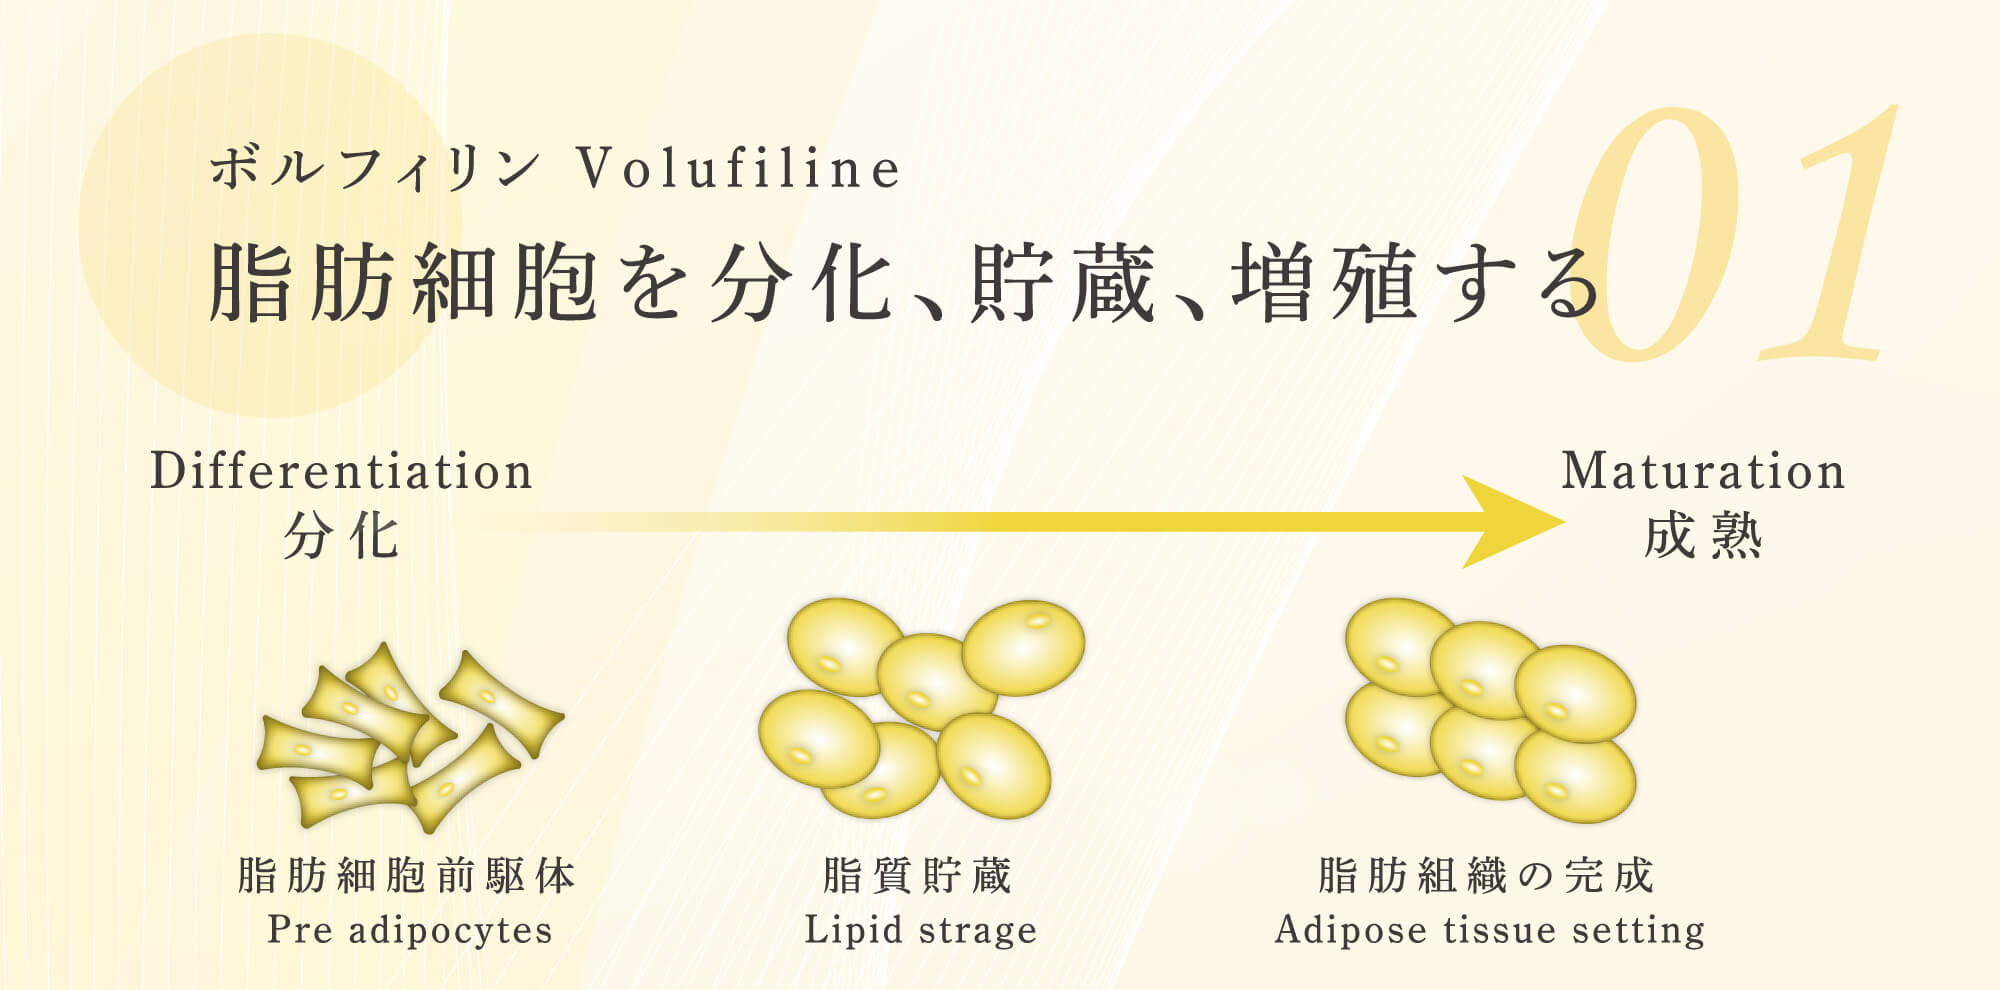 「ボルフィリン Volufiline」脂肪細胞を分化、貯蔵、増殖する